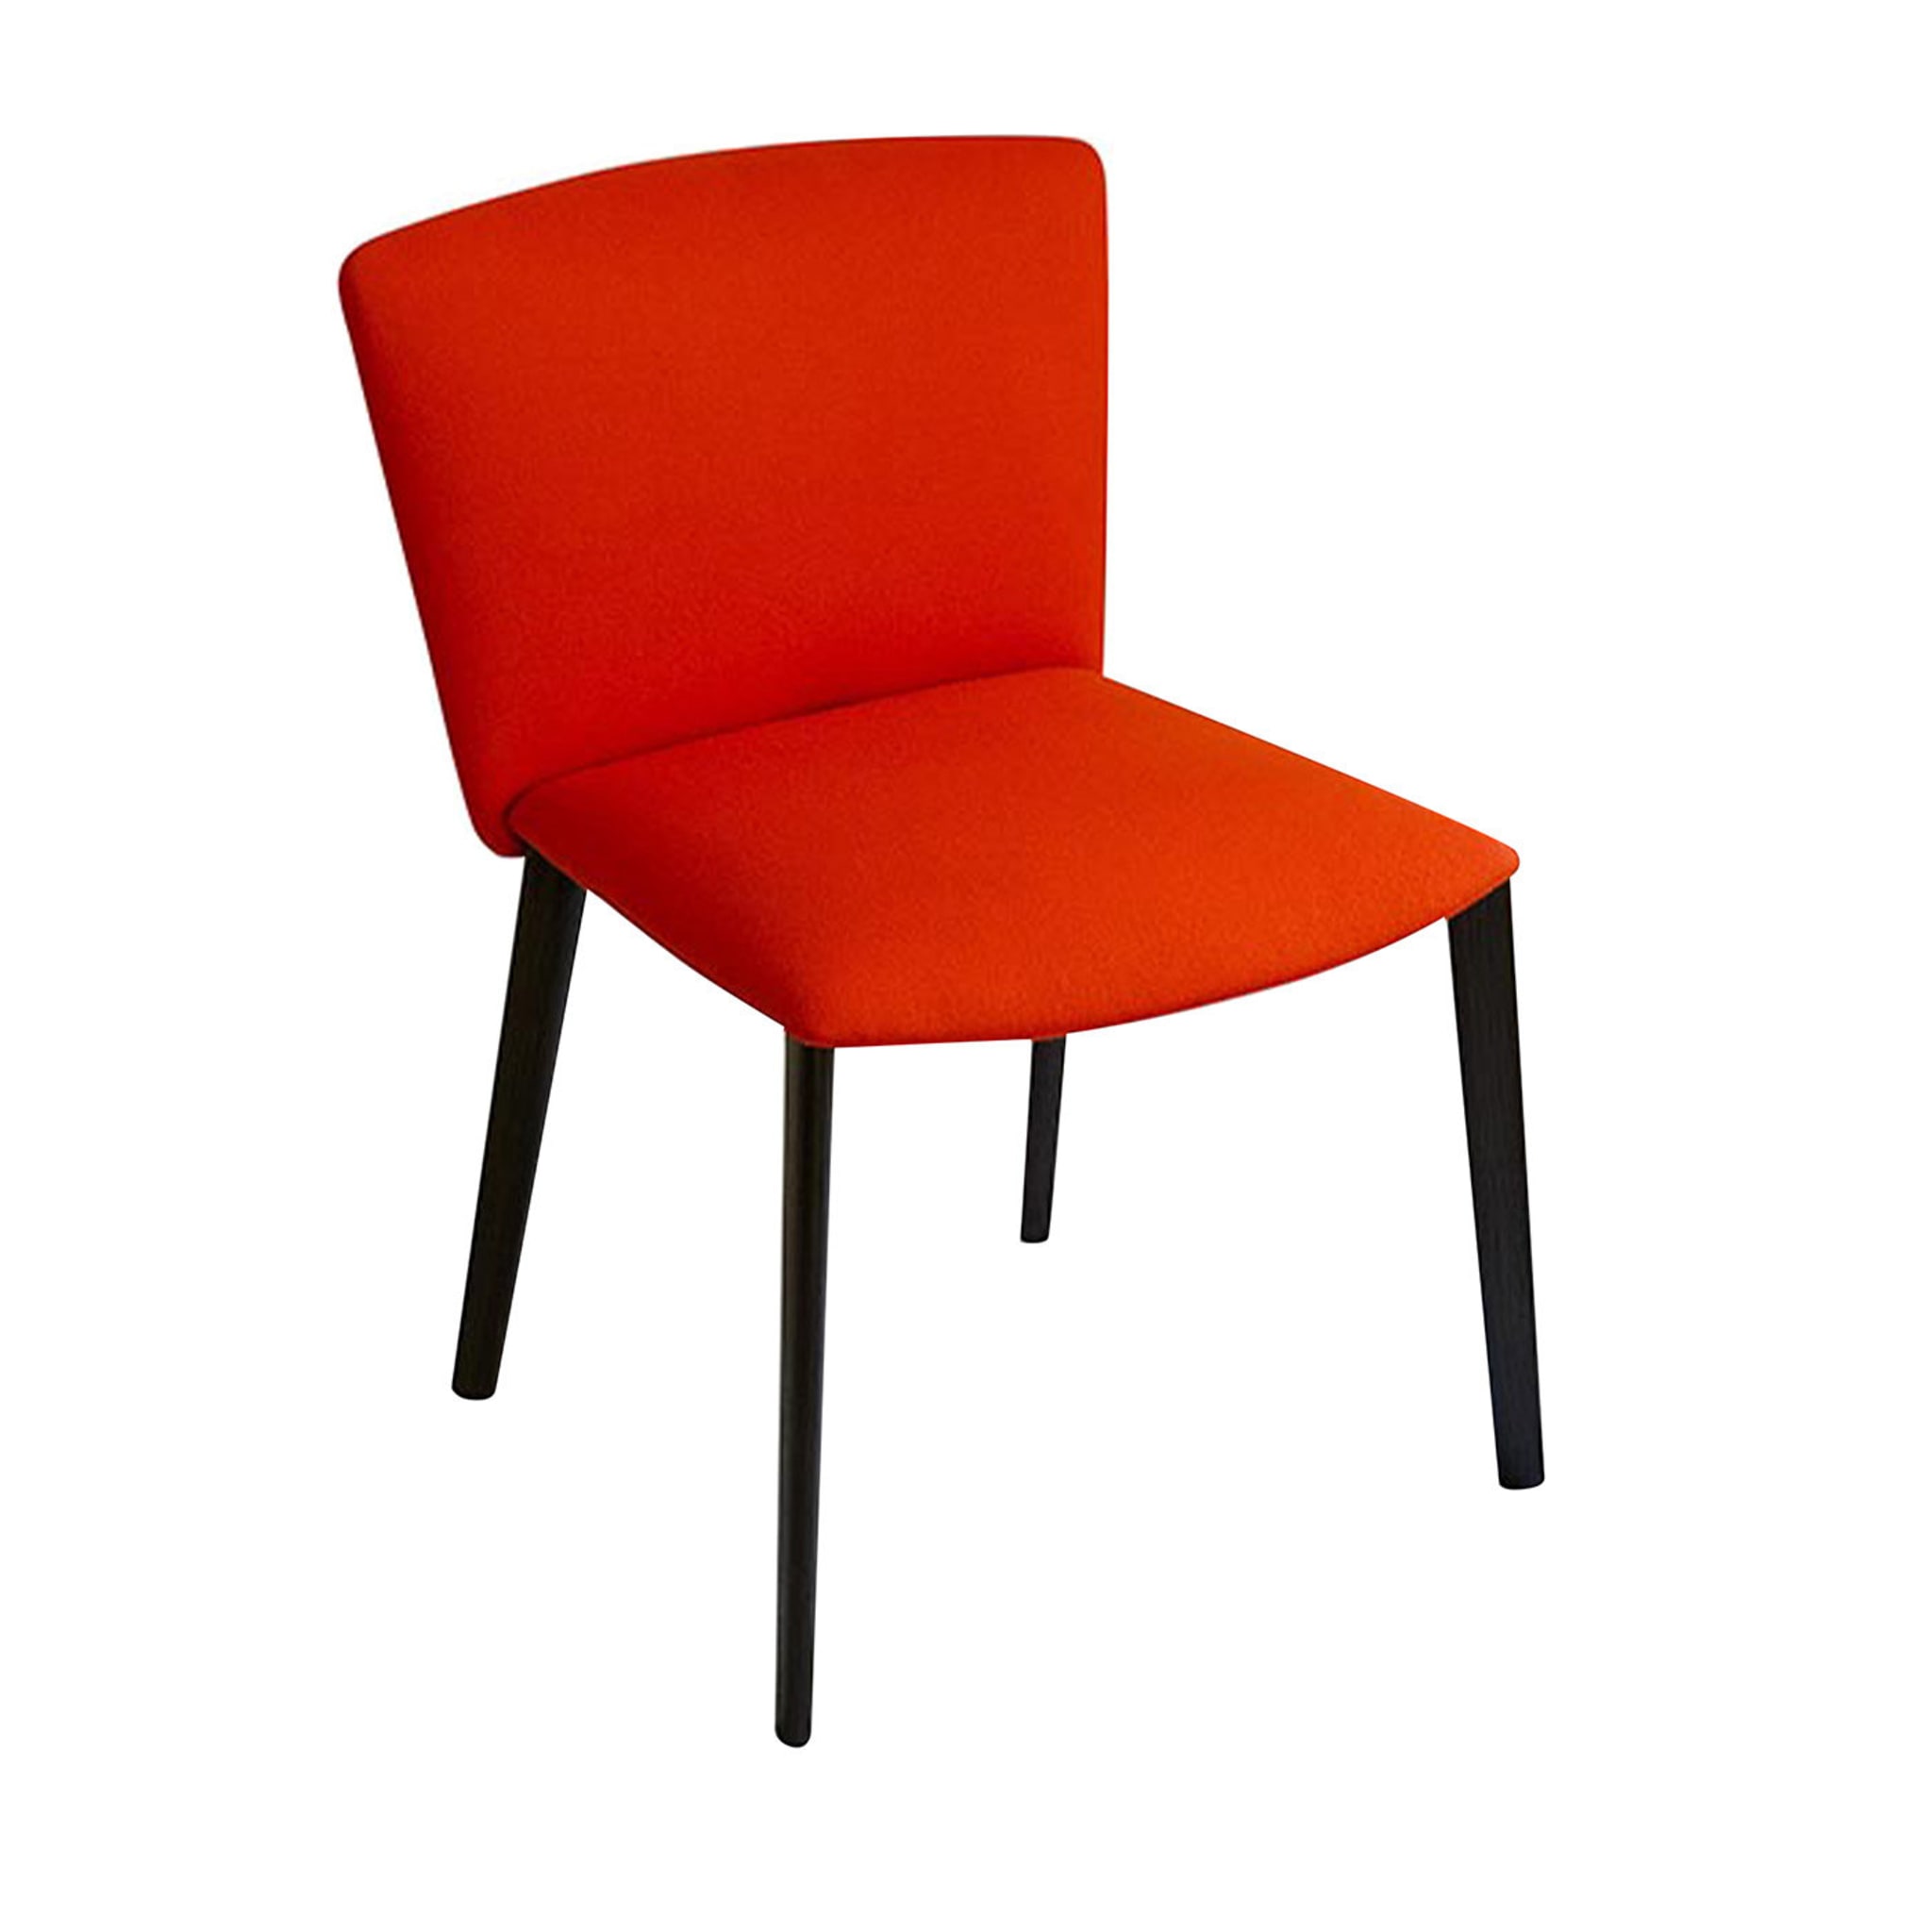 Vela Roter Stuhl von Lievore Altherr Molina - Hauptansicht